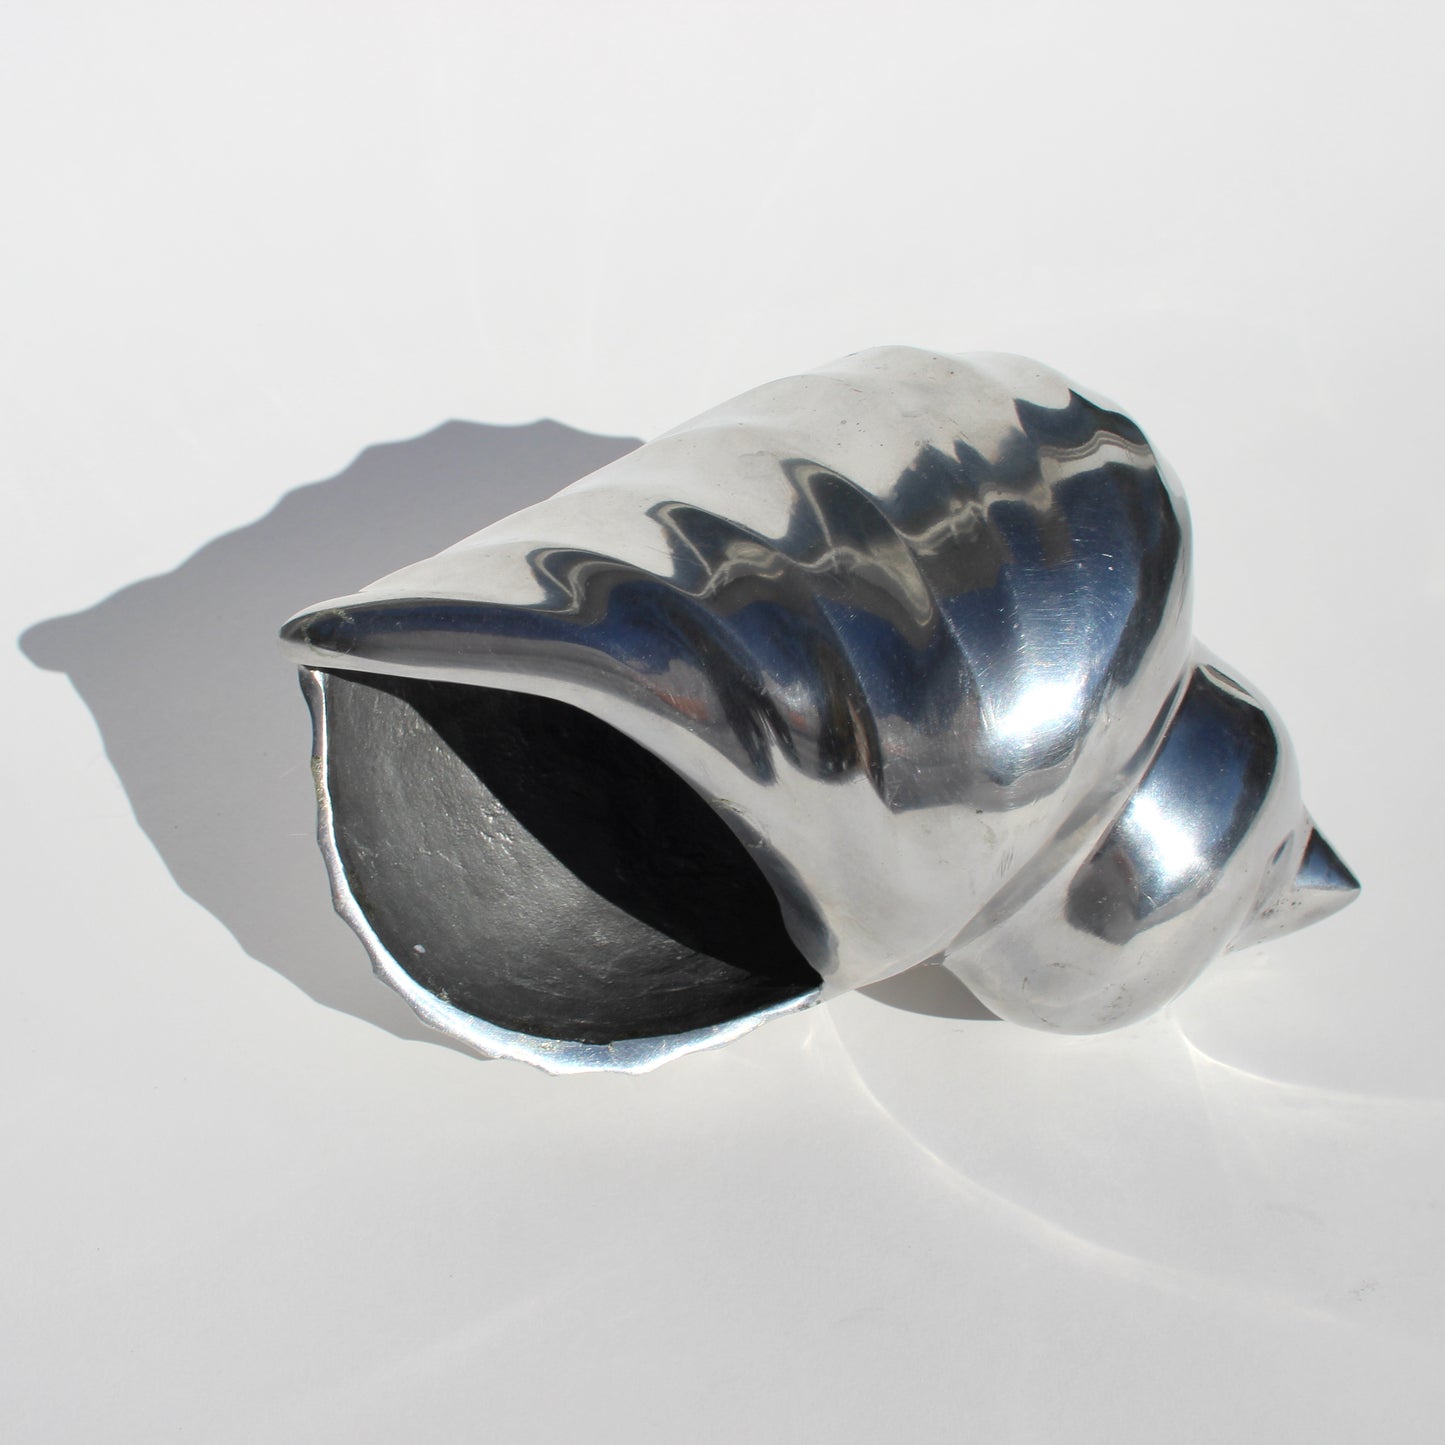 metallic shell sculpture